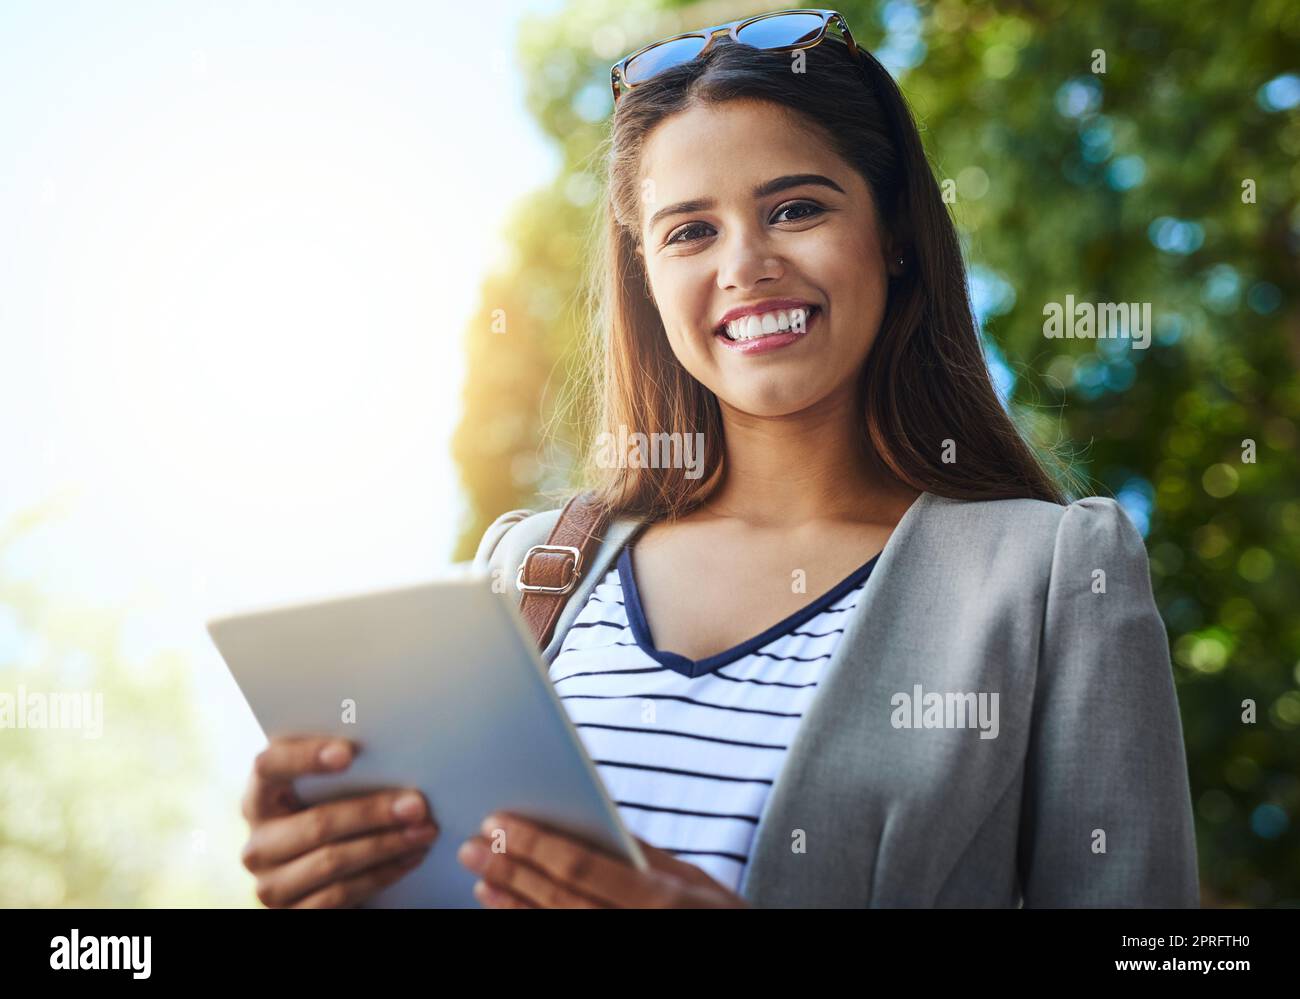 Il lavoro non si ferma mai, e nemmeno io. Ritratto ritagliato di una giovane donna attraente utilizzando il suo tablet mentre si va al lavoro. Foto Stock